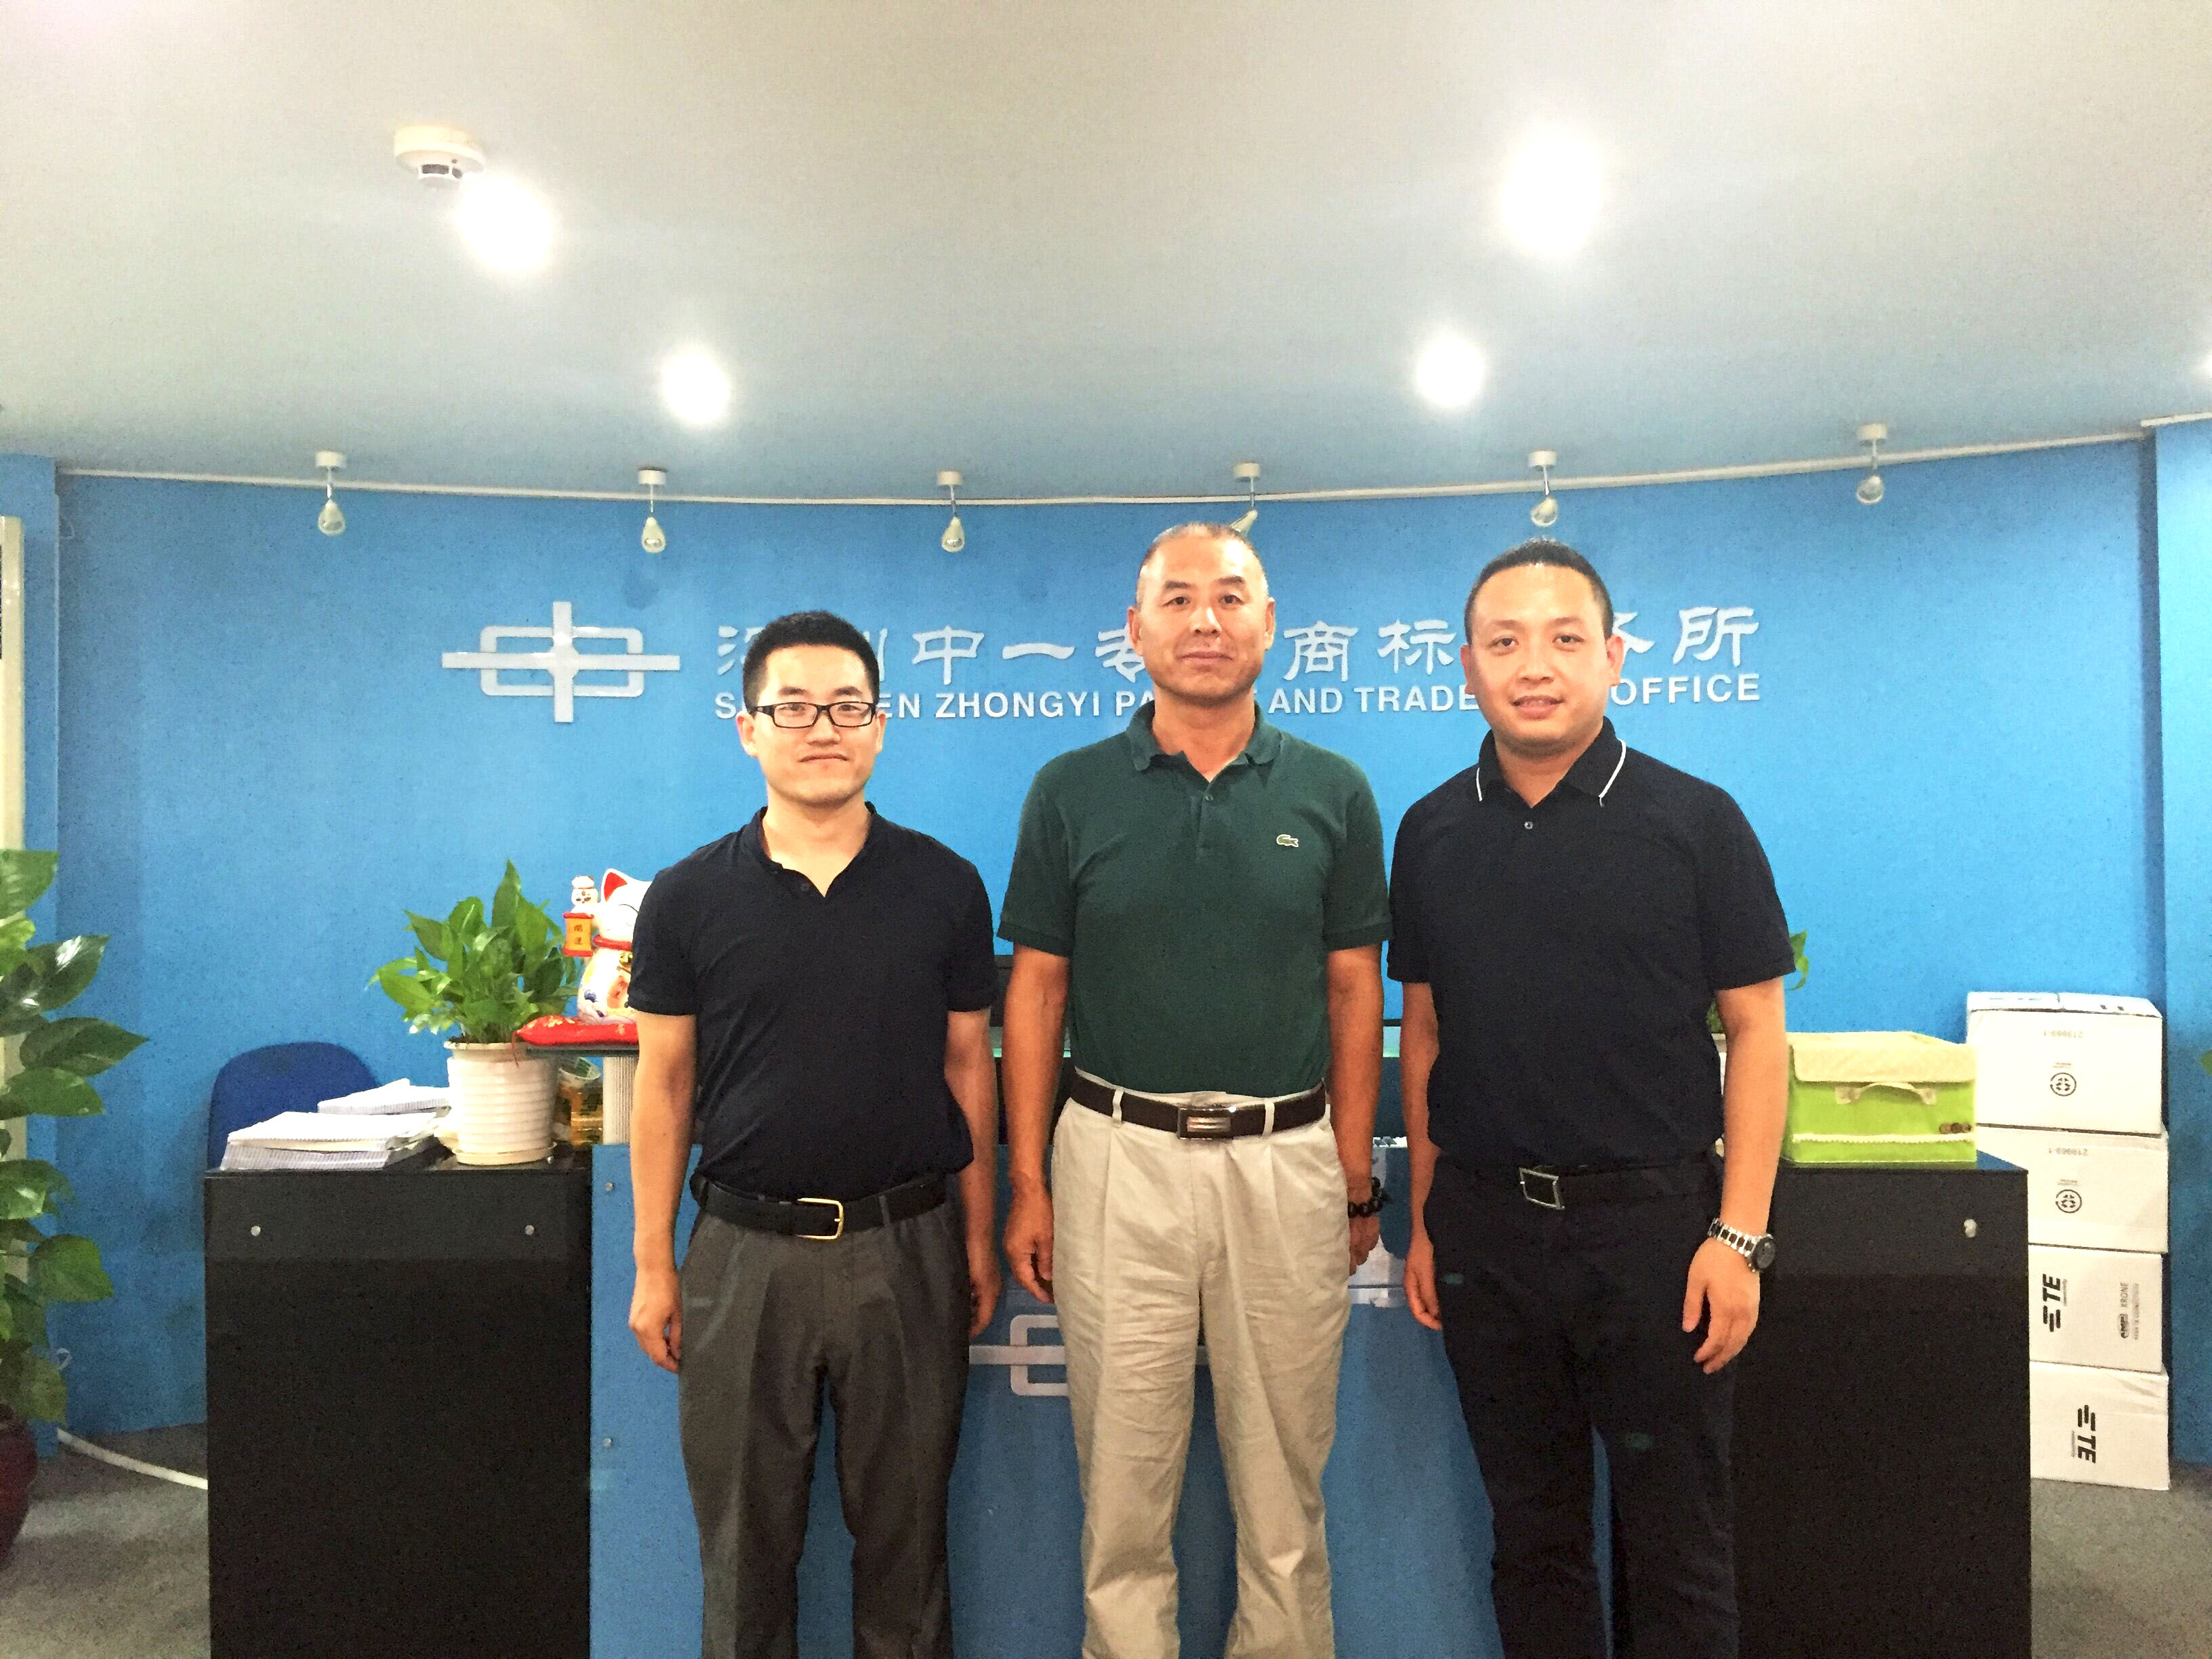 IPRdaily CEO Zhou Peng, etc. inspected Zhongyi